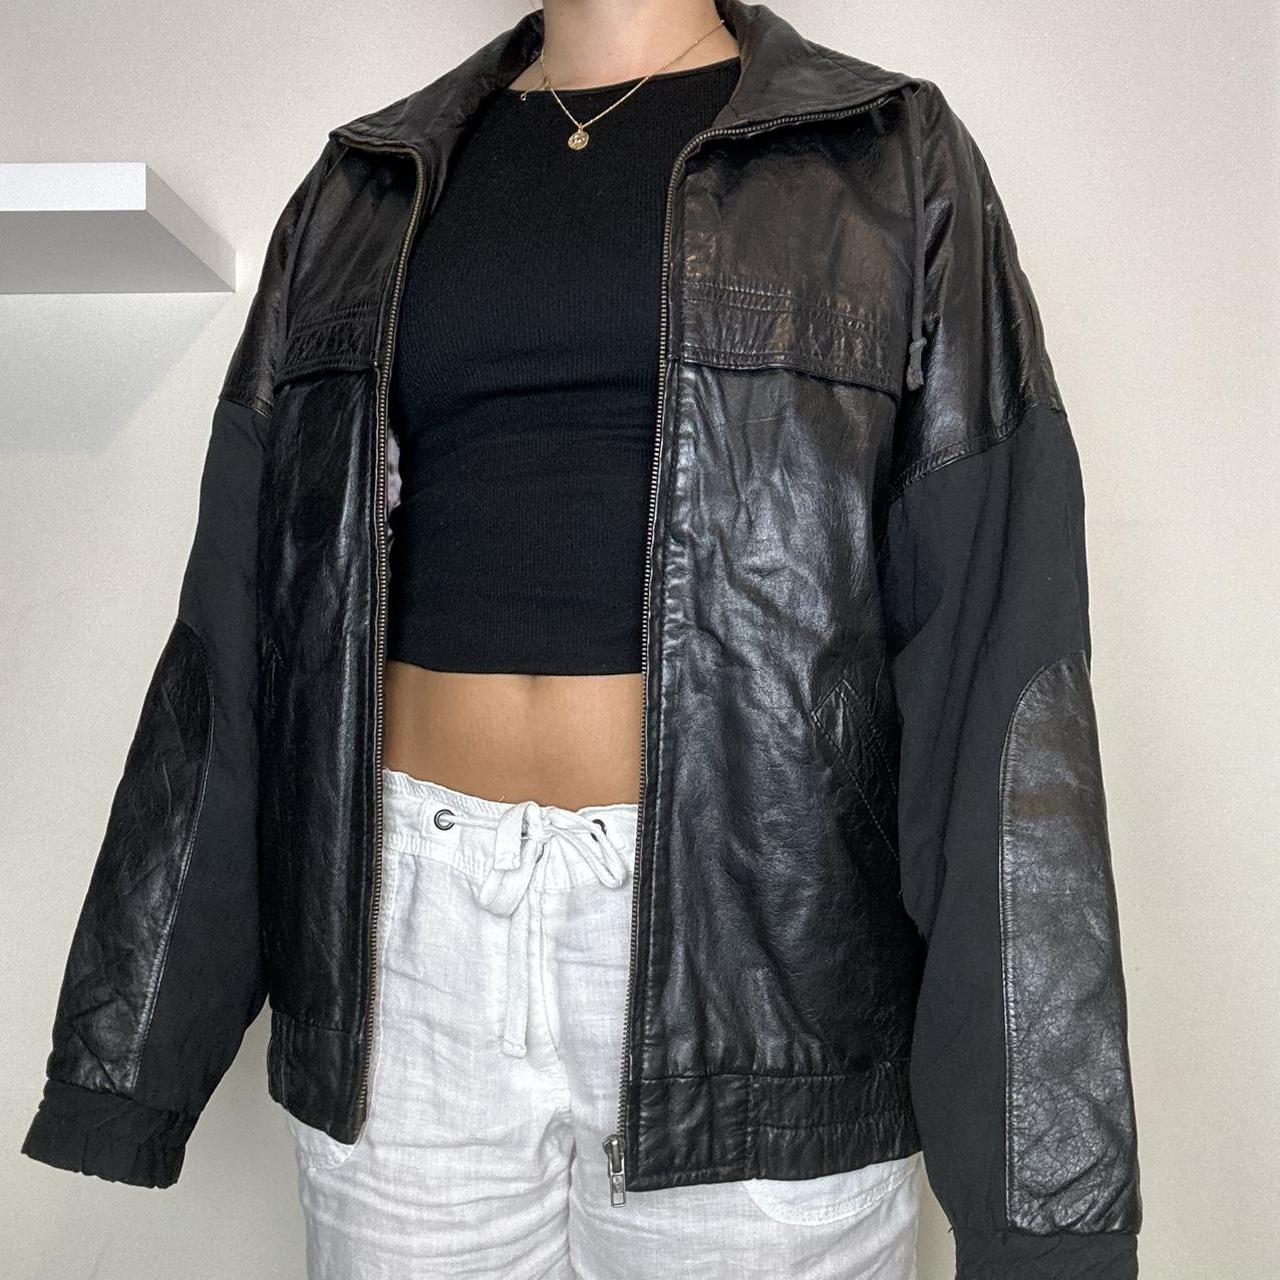 Vintage black leather bomber jacket Vintage 90s... - Depop